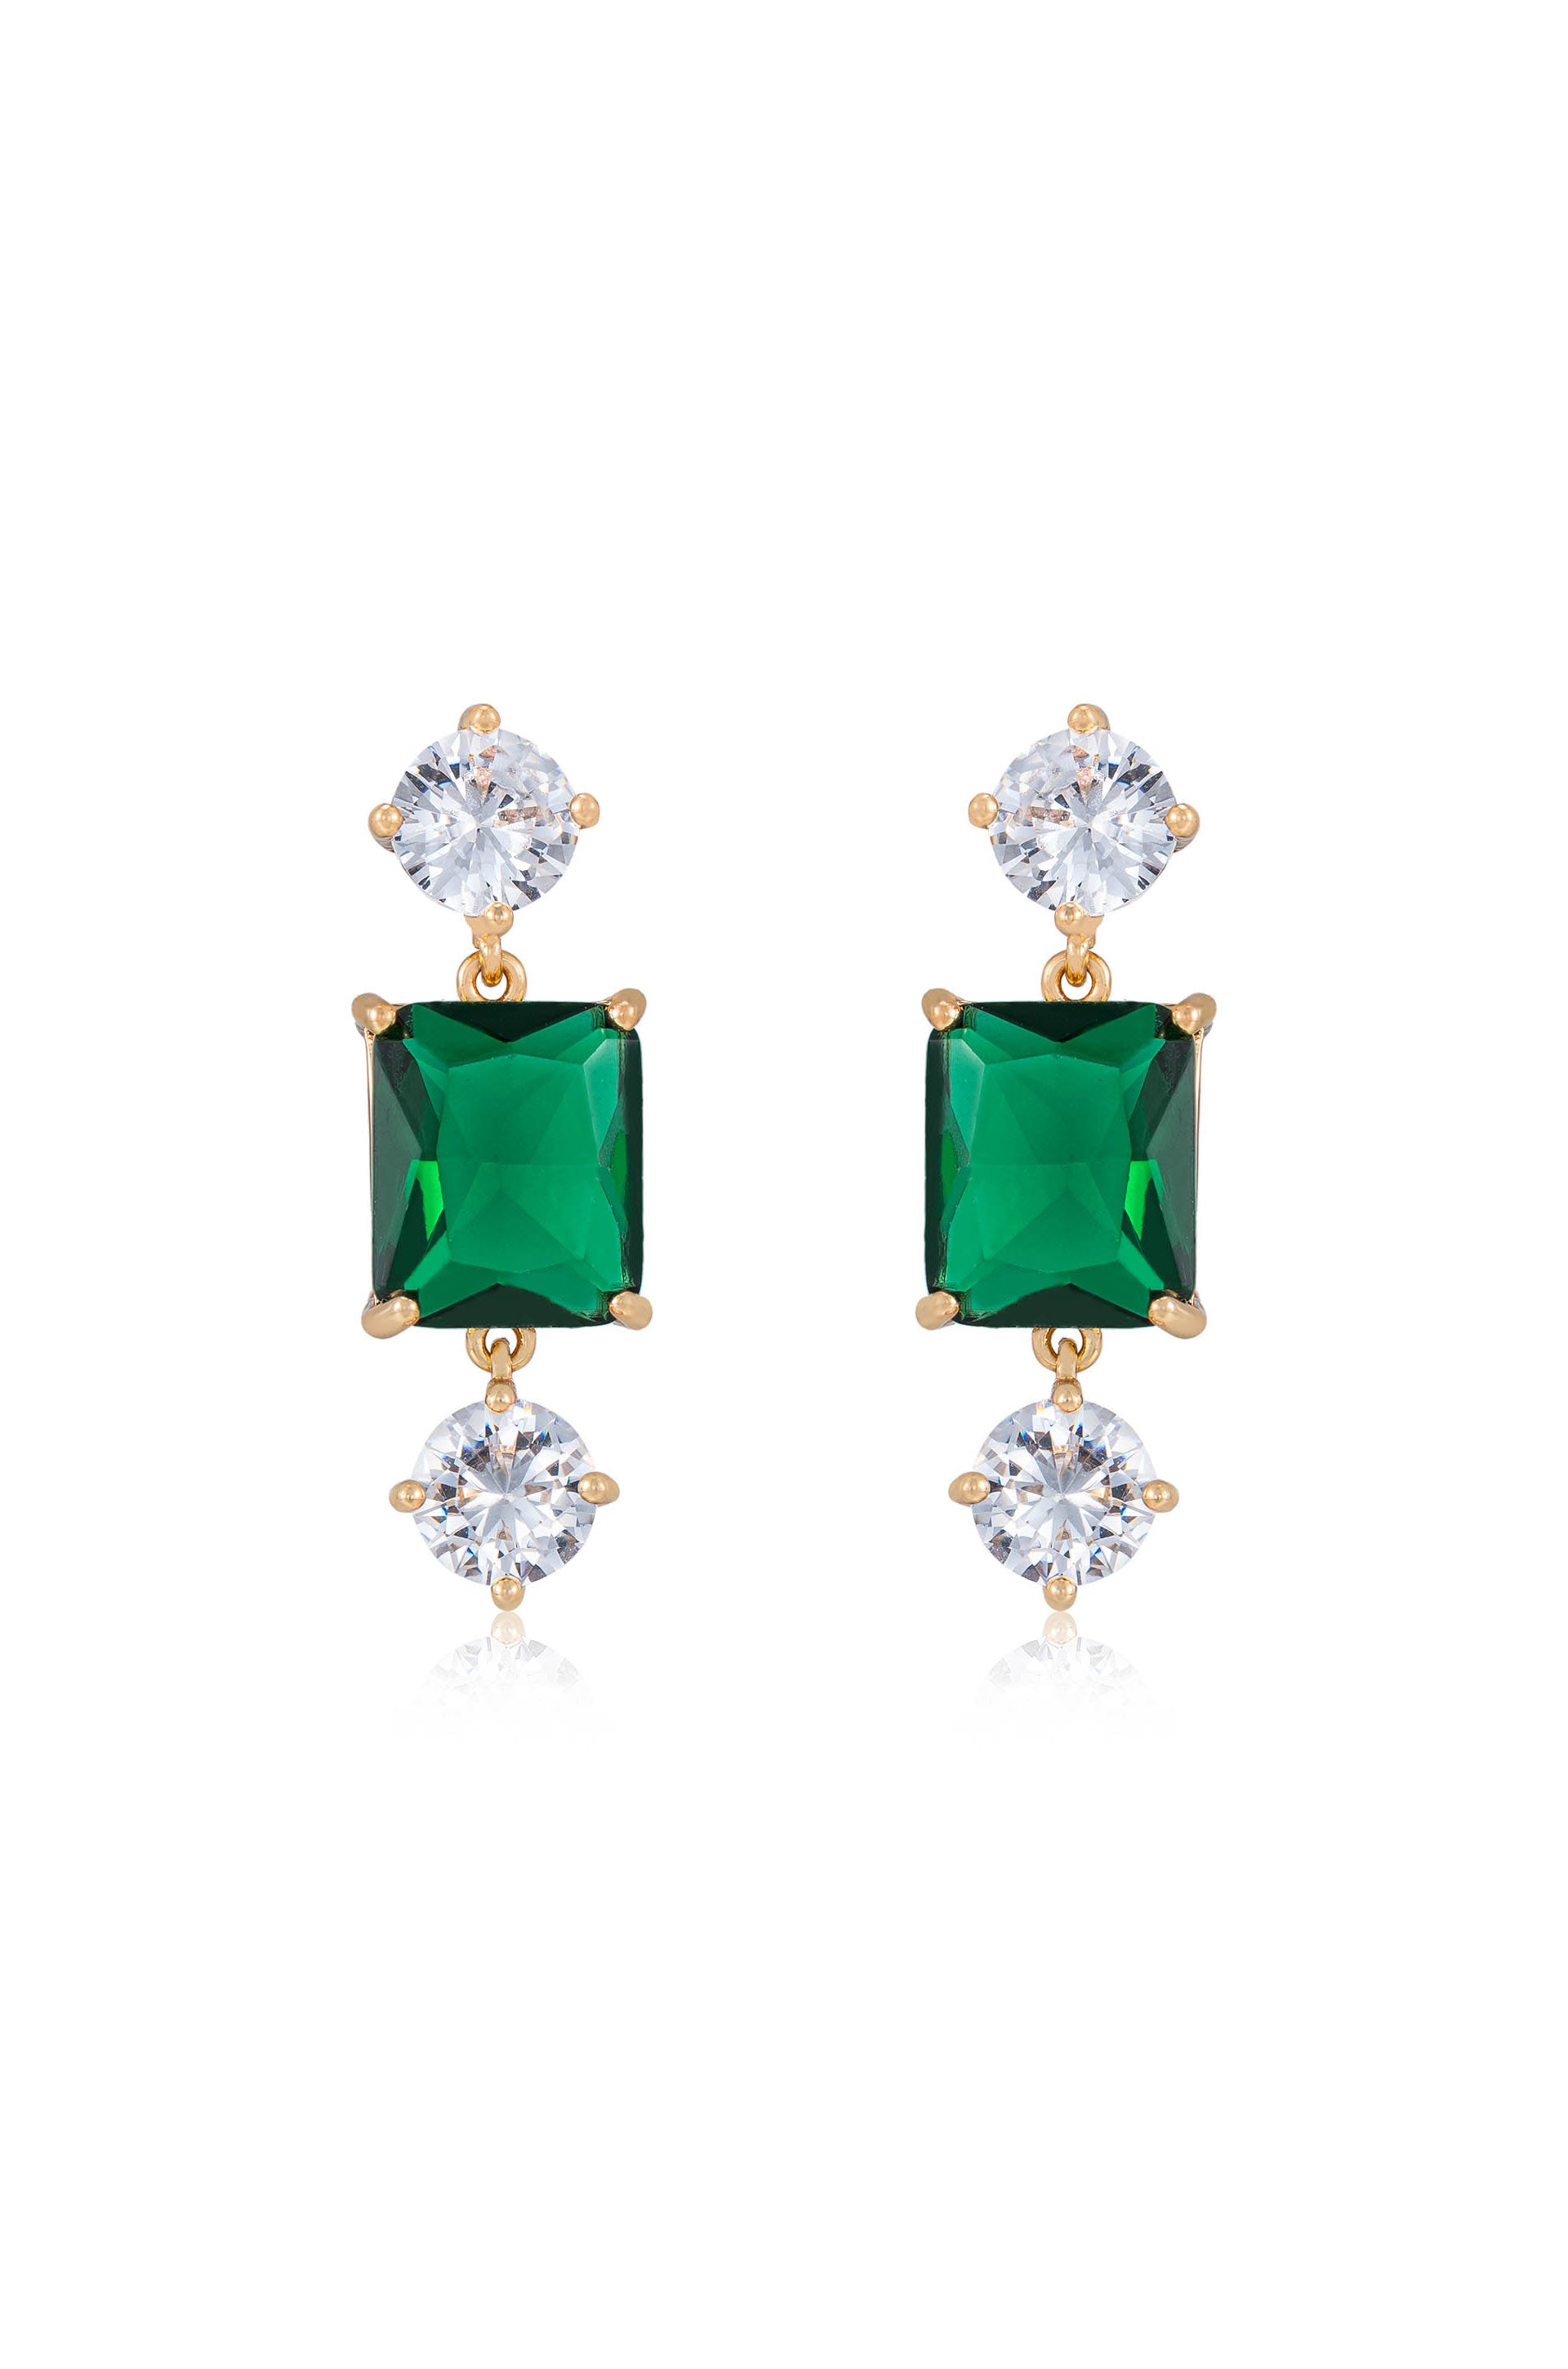 Emerald Beauty 18k Gold Plated Dangle Earrings